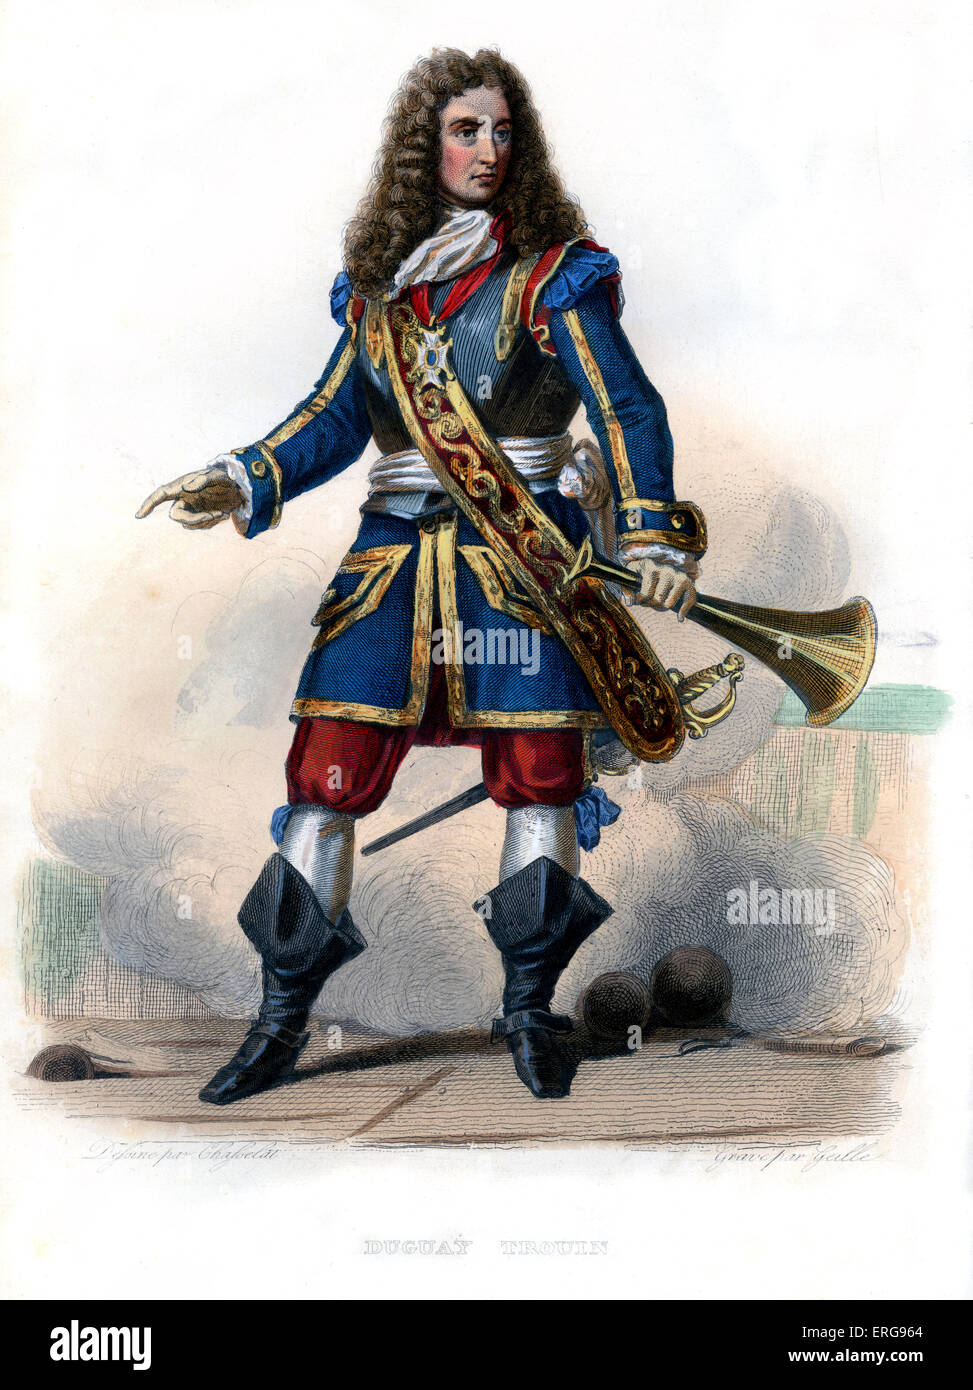 René Trouin, Sieur du Gué, di solito chiamato René Duguay-Trouin. Famoso corsaro francese /corsaro di Saint-Malo.1673 - 1736. Foto Stock